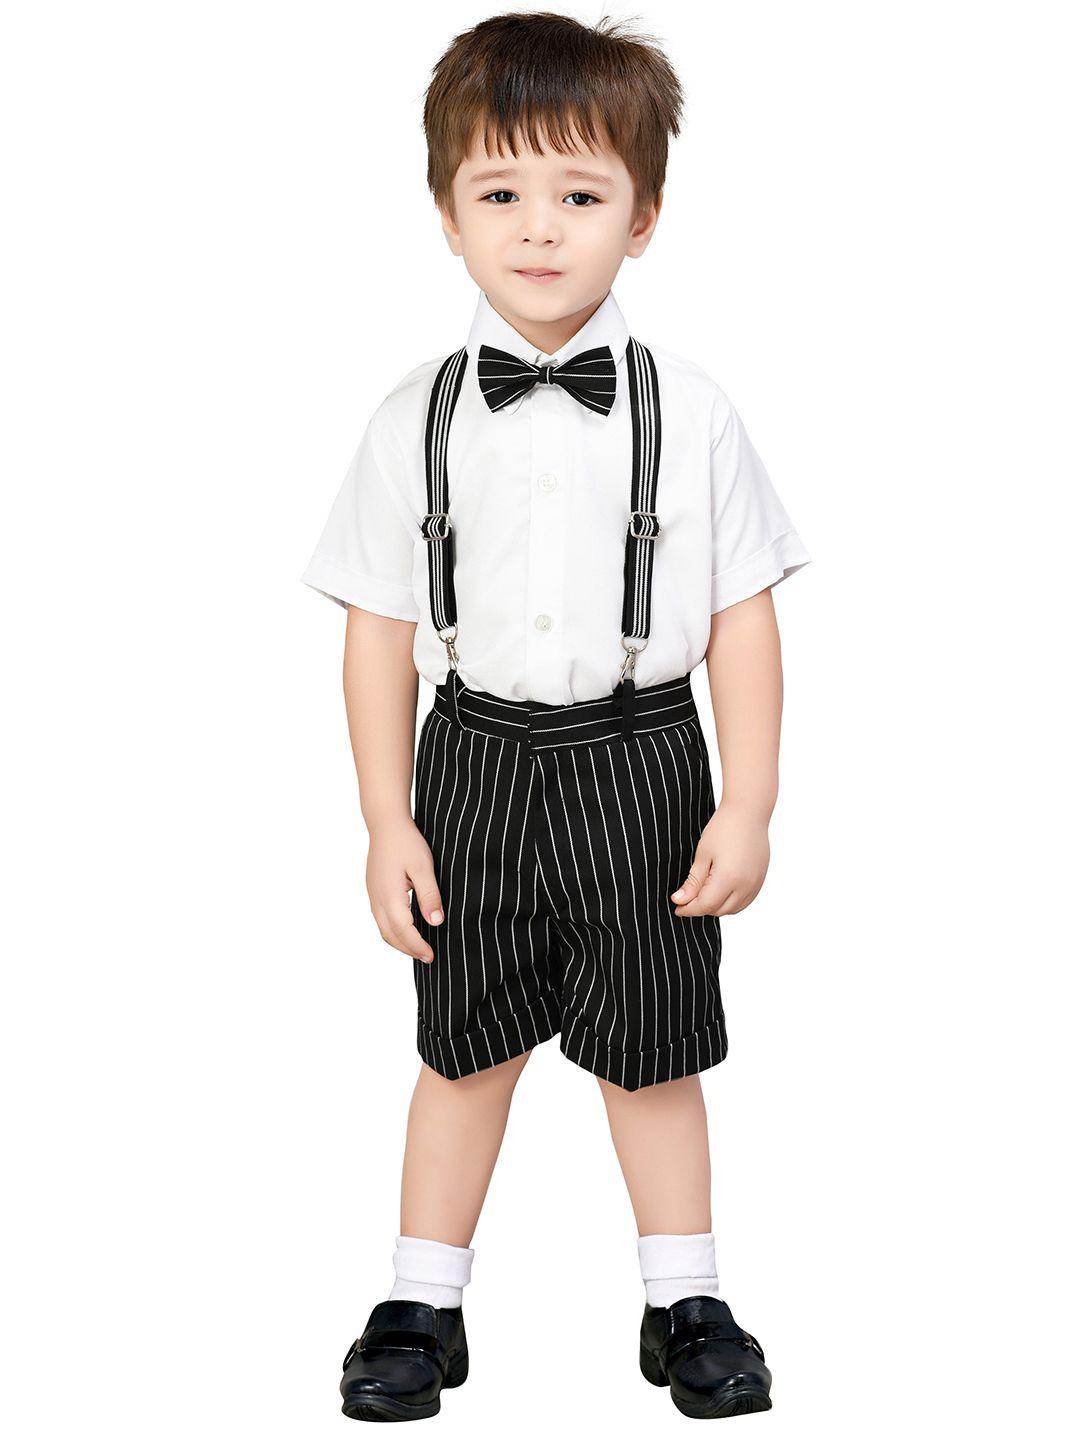 jeetethnics-boys-black-&-white-shirt-with-shorts-clothing-set